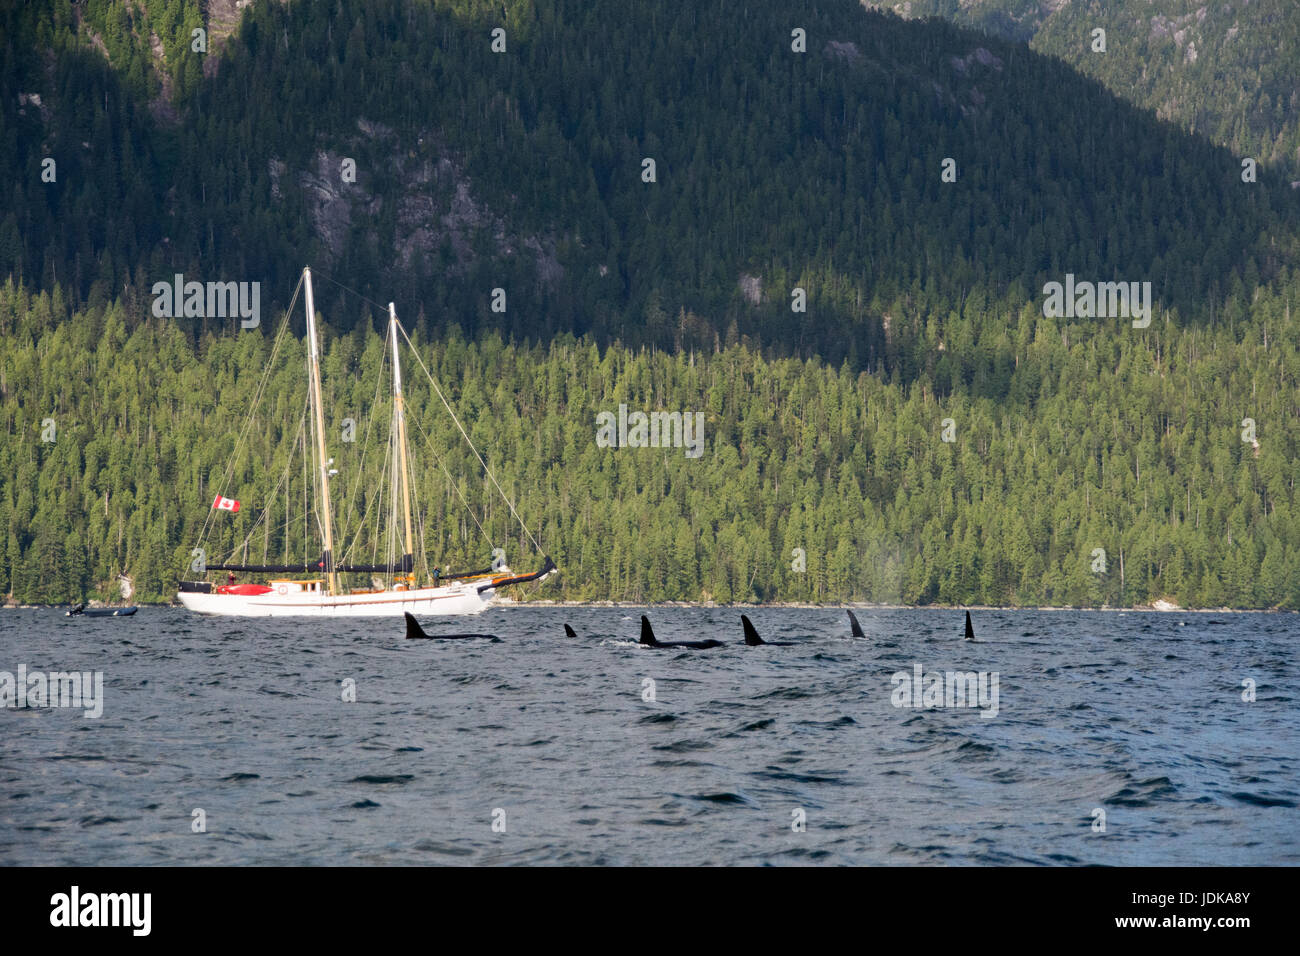 Un pod di resident killer balene che nuotano accanto a una goletta nel canale di balena, nel grande orso regione della foresta pluviale della British Columbia, Canada. Foto Stock